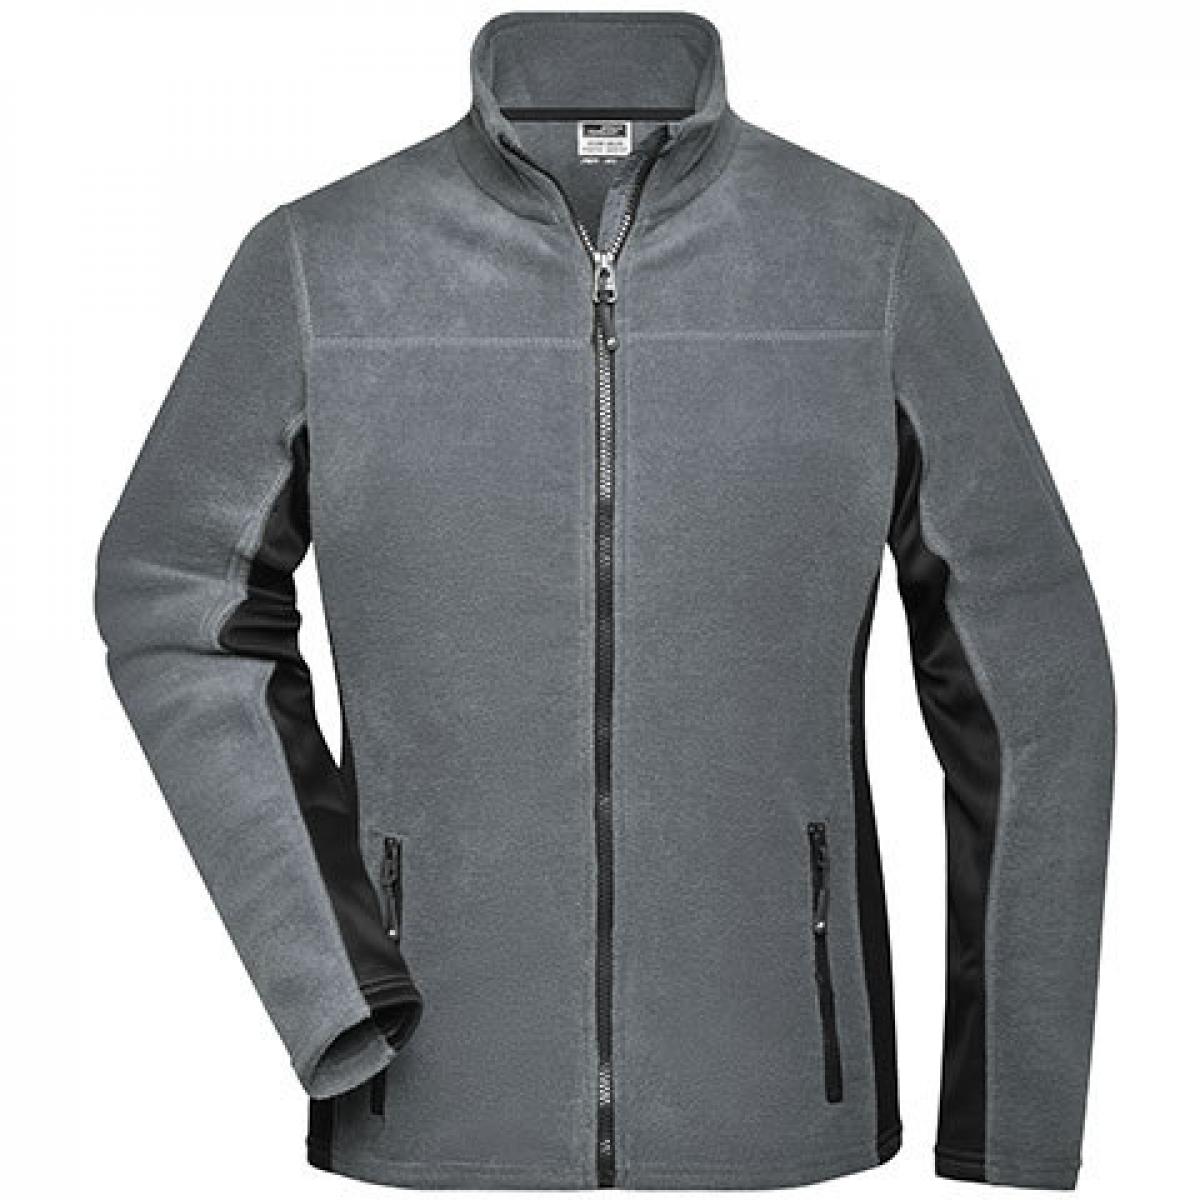 Hersteller: James+Nicholson Herstellernummer: JN841 Artikelbezeichnung: Damen‘ Workwear Fleece Jacket -STRONG- Farbe: Carbon/Black